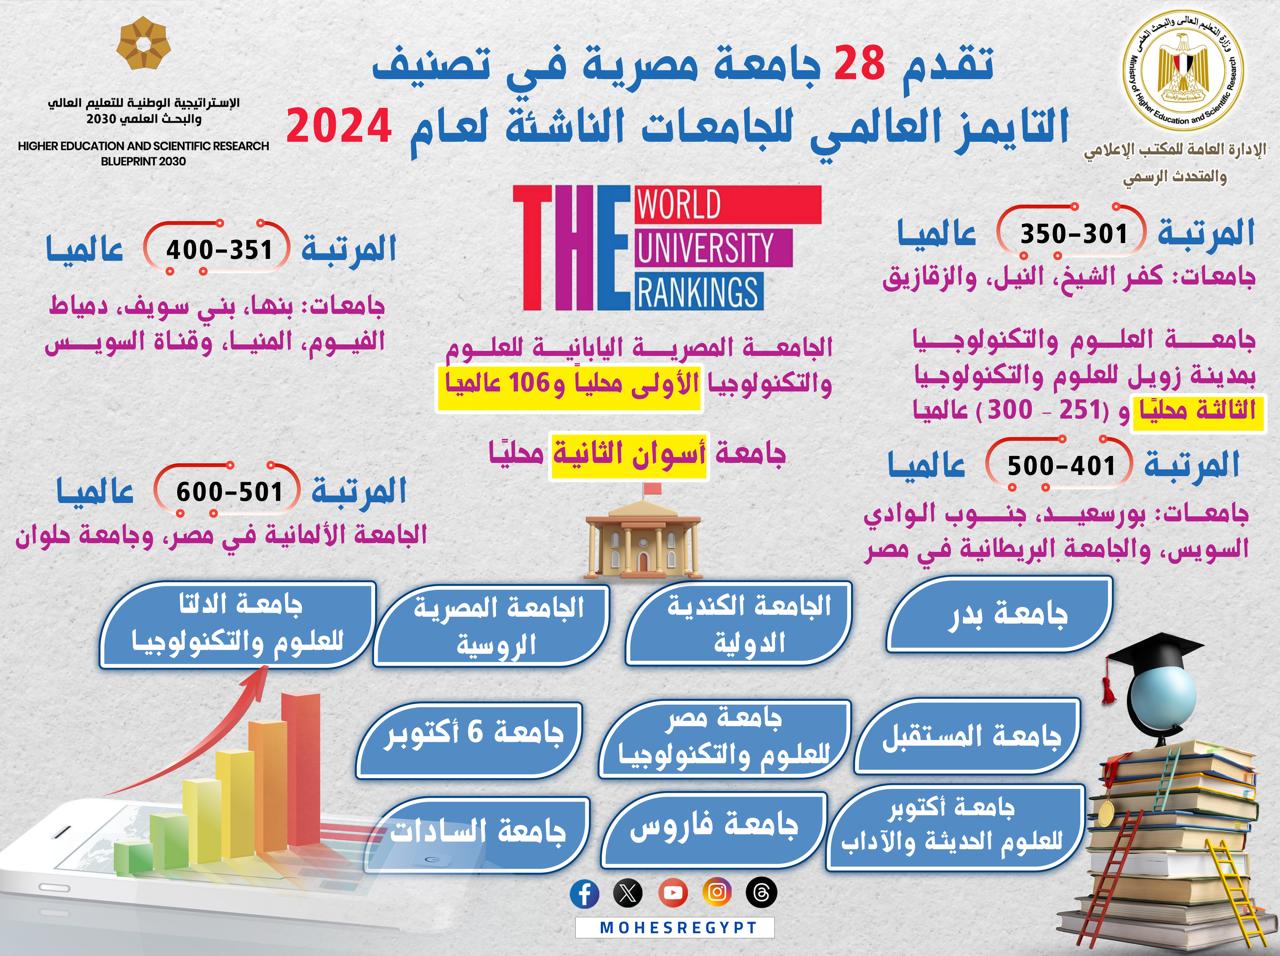 التعليم العالي:  تقدم 28 جامعة مصرية في تصنيف التايمز العالمي للجامعات الناشئة لعام 2024